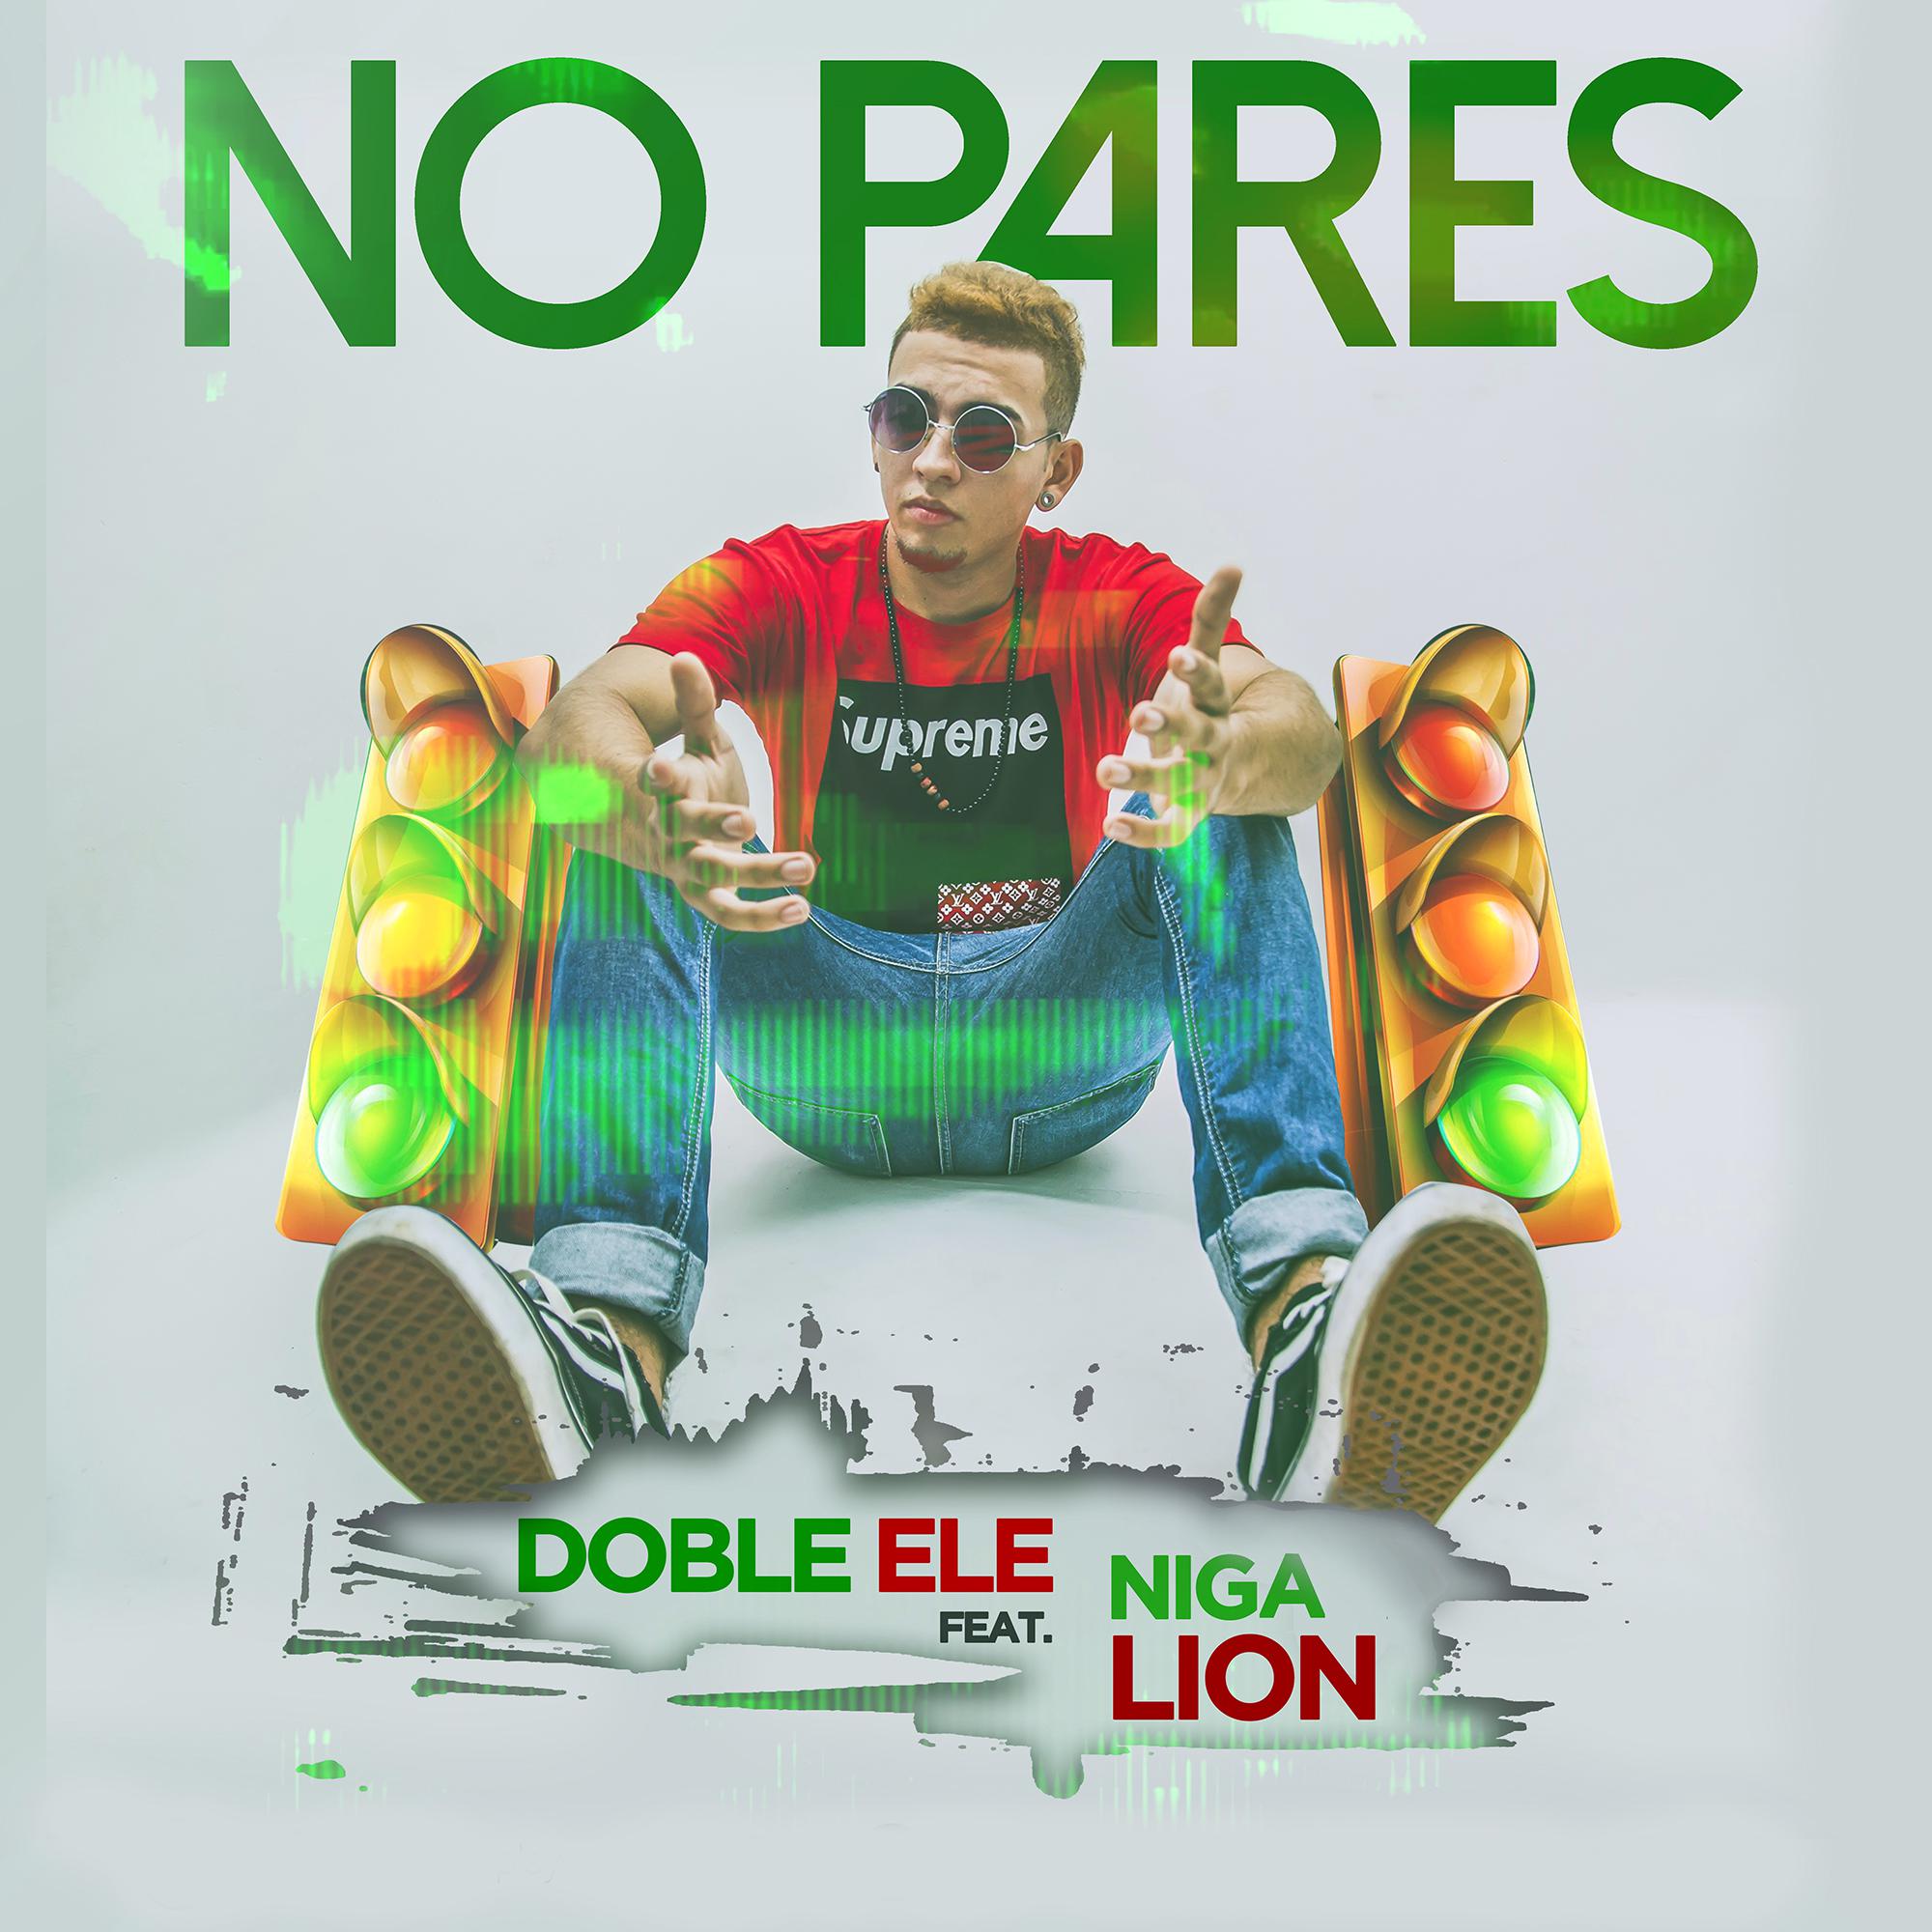 Doble Ele - No Pares (Feat. Niga Lion)